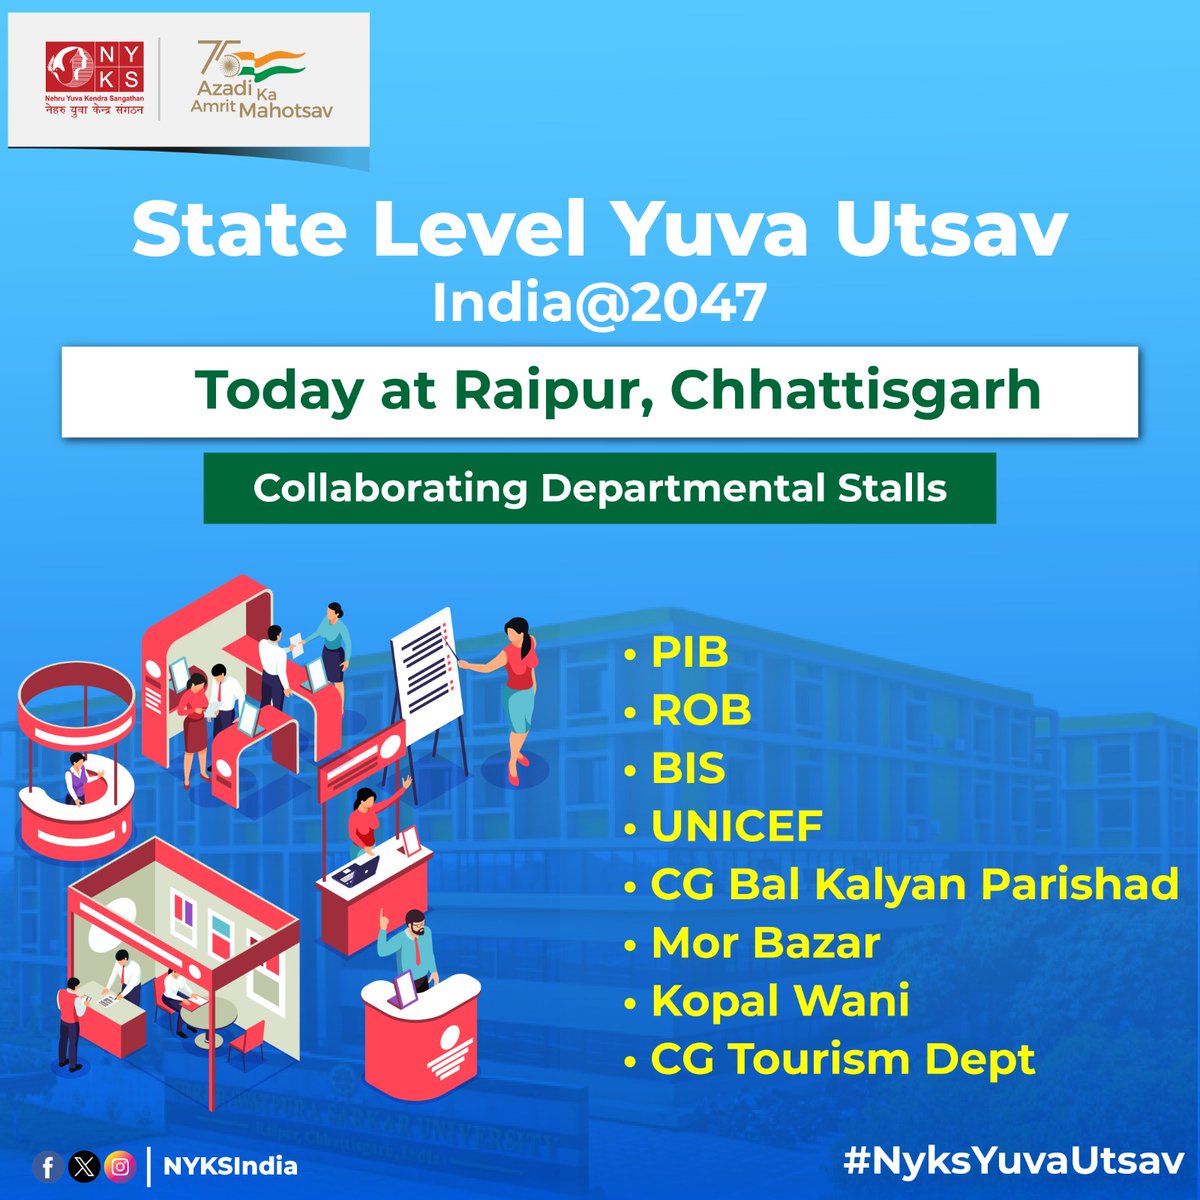 Various departments and organizations are displaying vibrant exhibitions at the State Level #YuvaUtsav2023 in Raipur, Chhattisgarh. #NyksYuvaUtsav #IndiaAt2047 #YuvaUtsav #Raipur #NYKSIndia